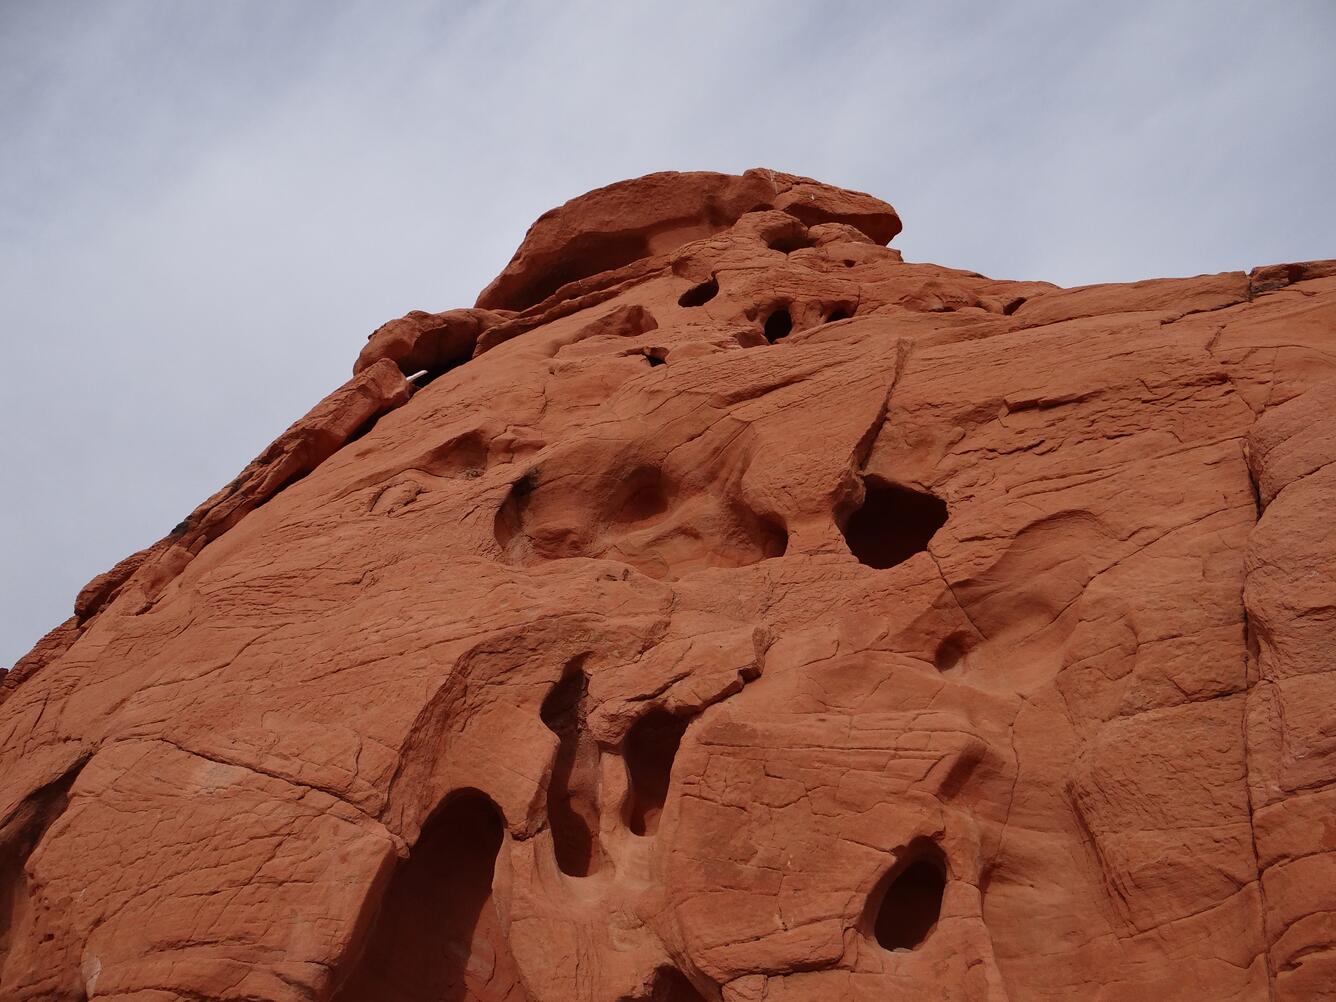 Image: Sandstone Formation